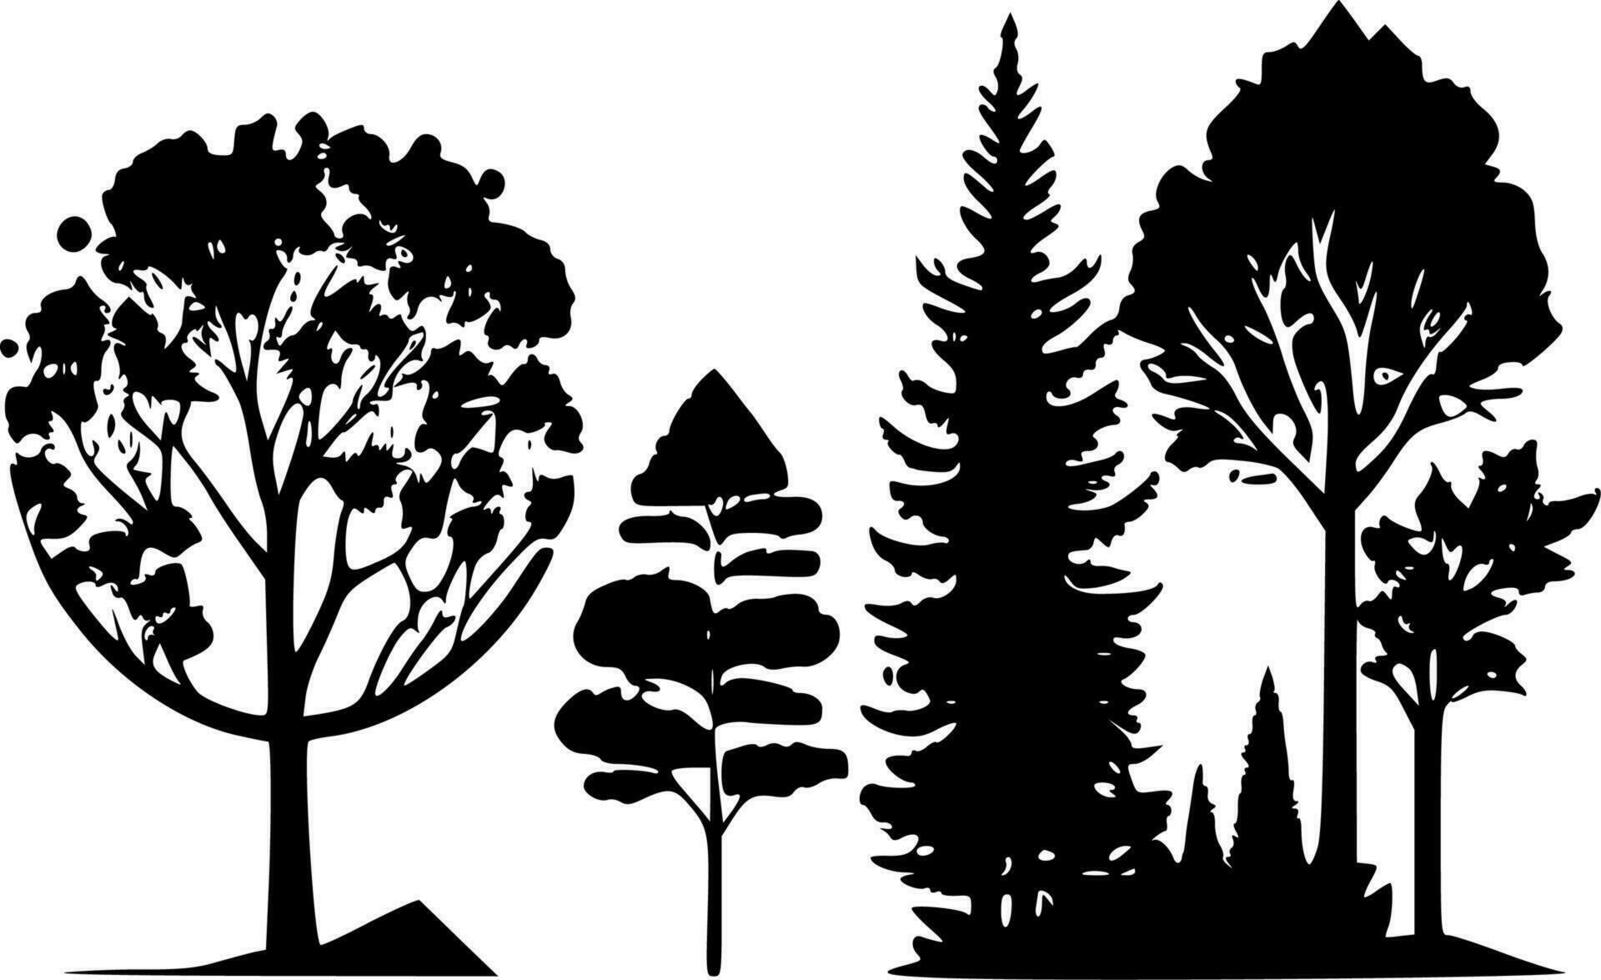 Bäume, minimalistisch und einfach Silhouette - - Vektor Illustration